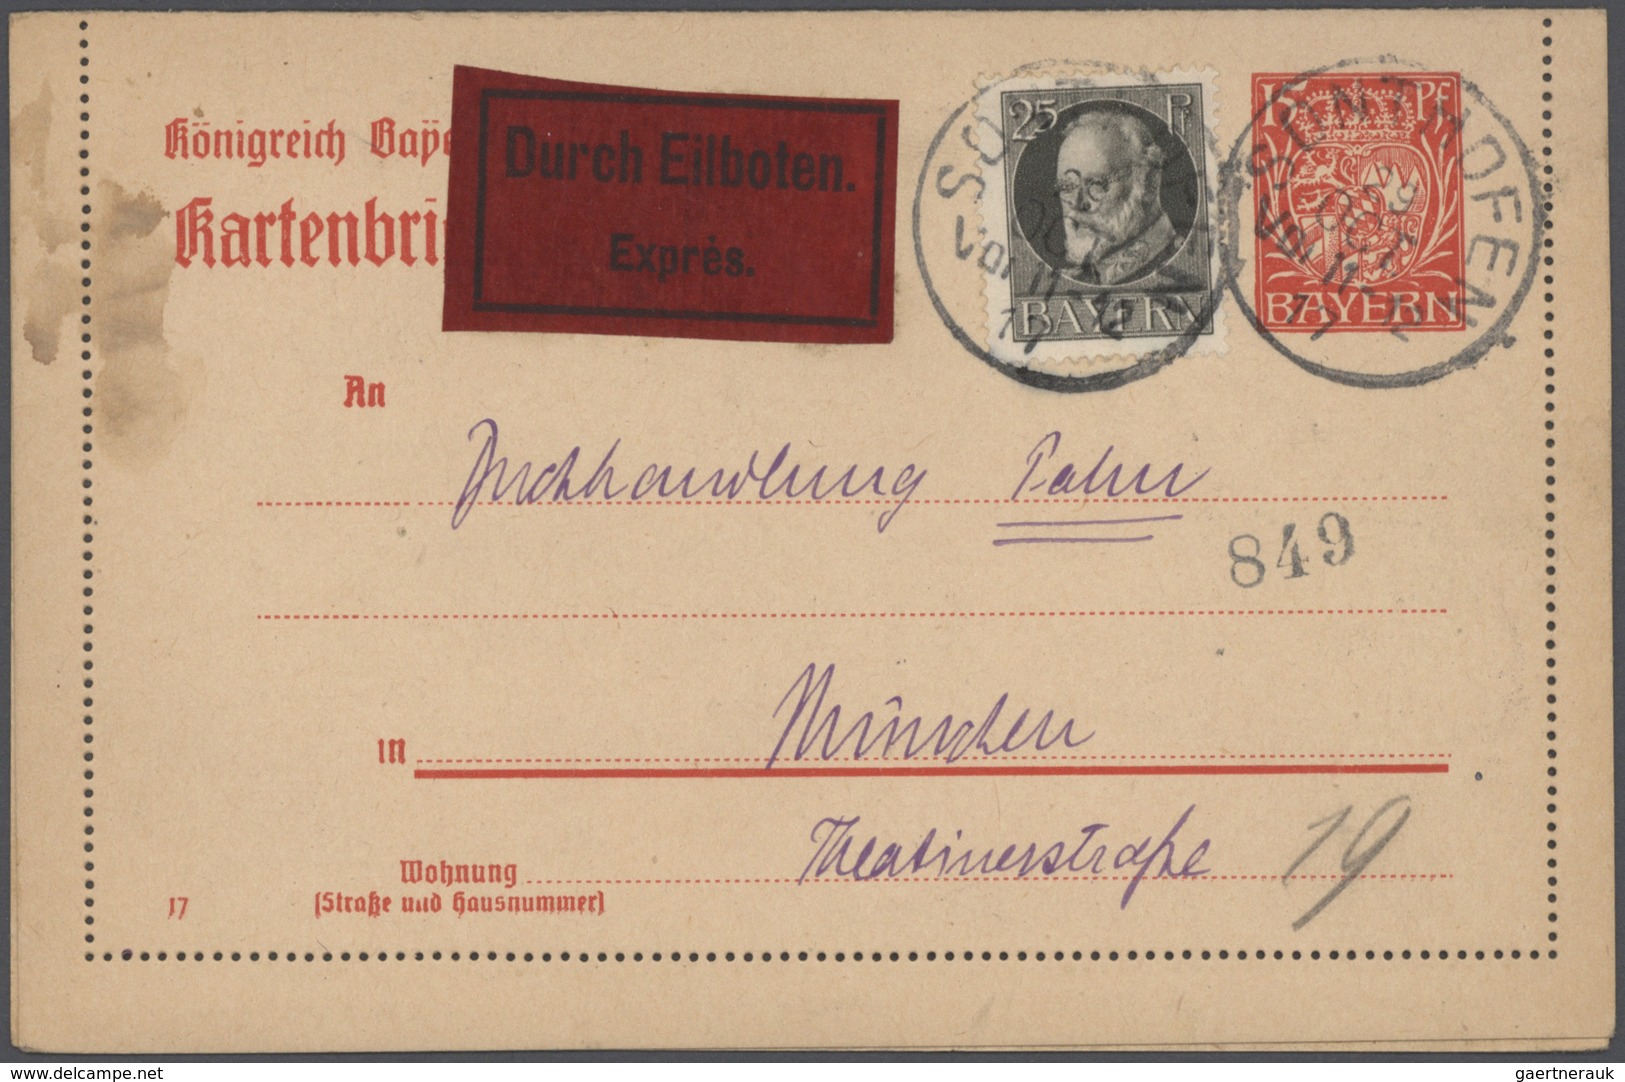 31024 Deutschland: 1860-1960, vielseitige Partie mit geschätzt 1.000 Briefen, Ganzsachen und Belegen, dabe